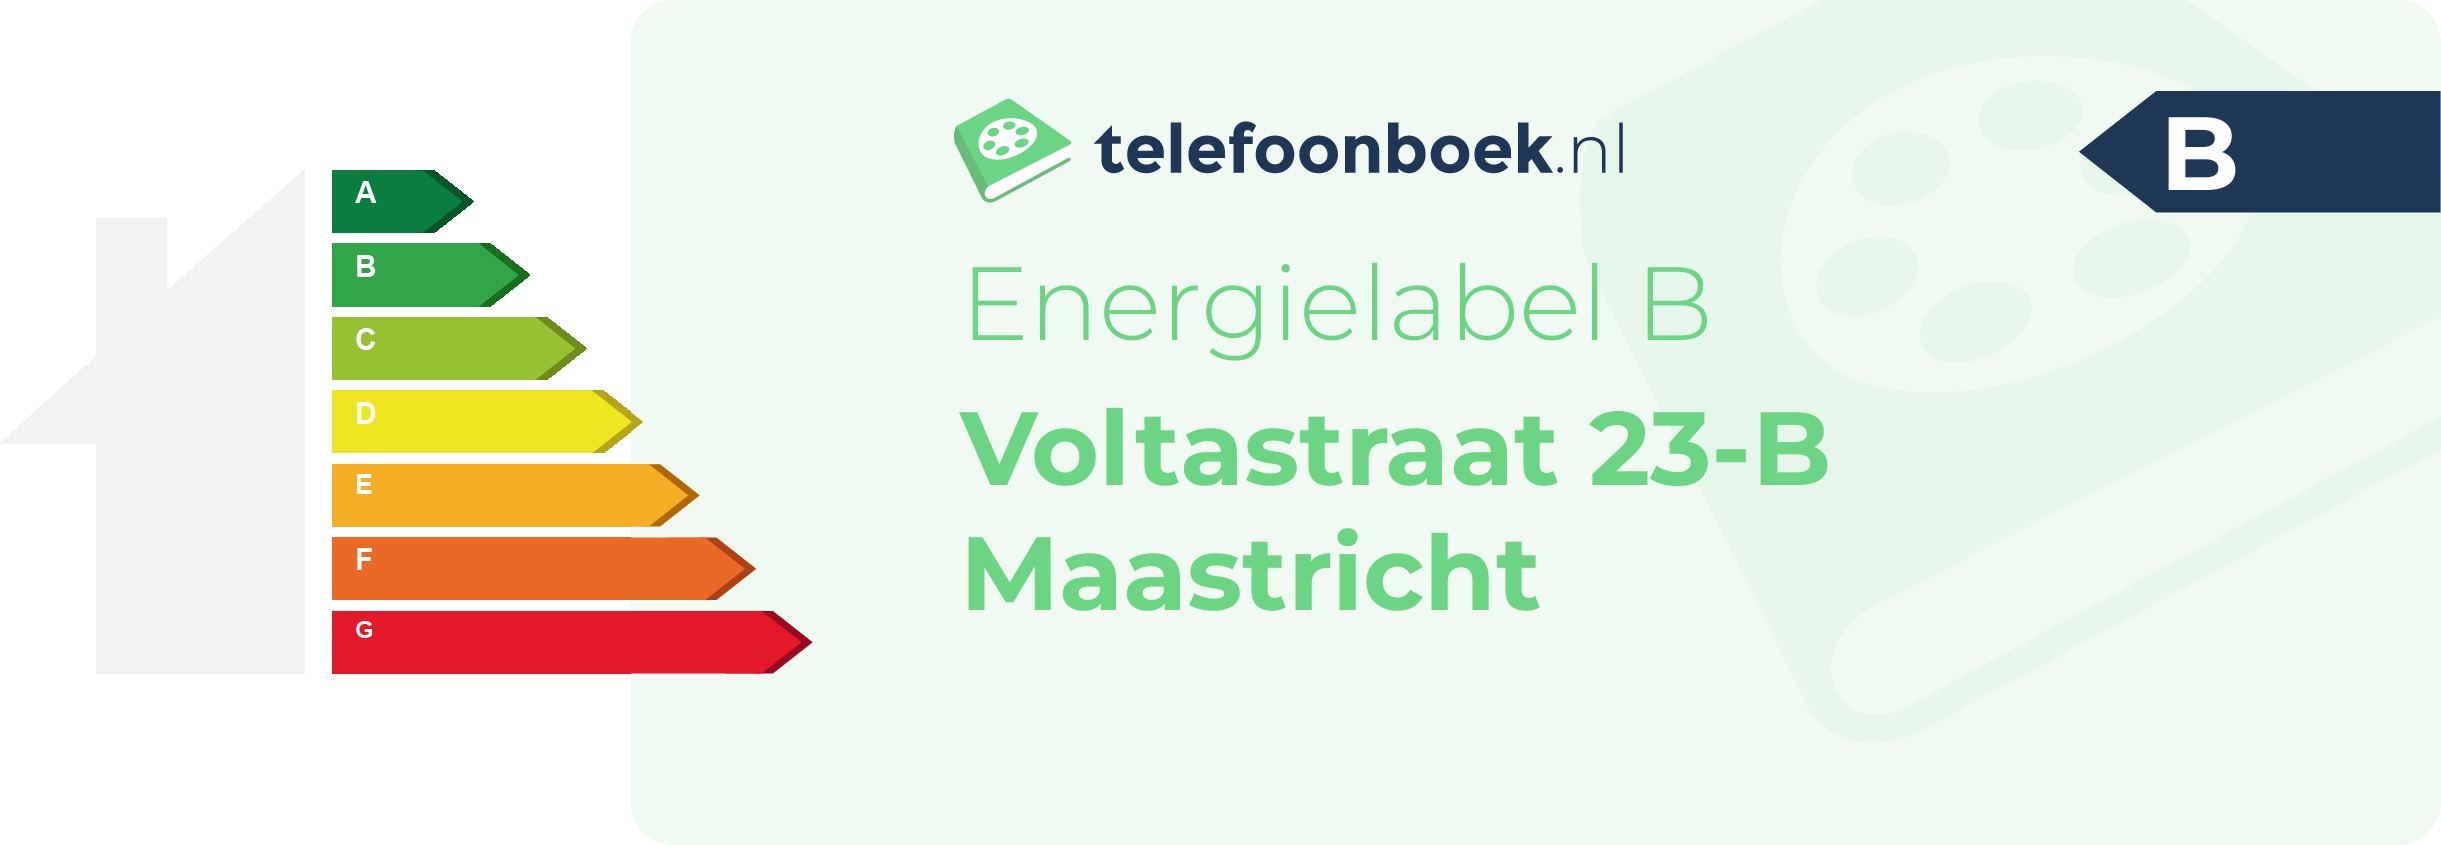 Energielabel Voltastraat 23-B Maastricht